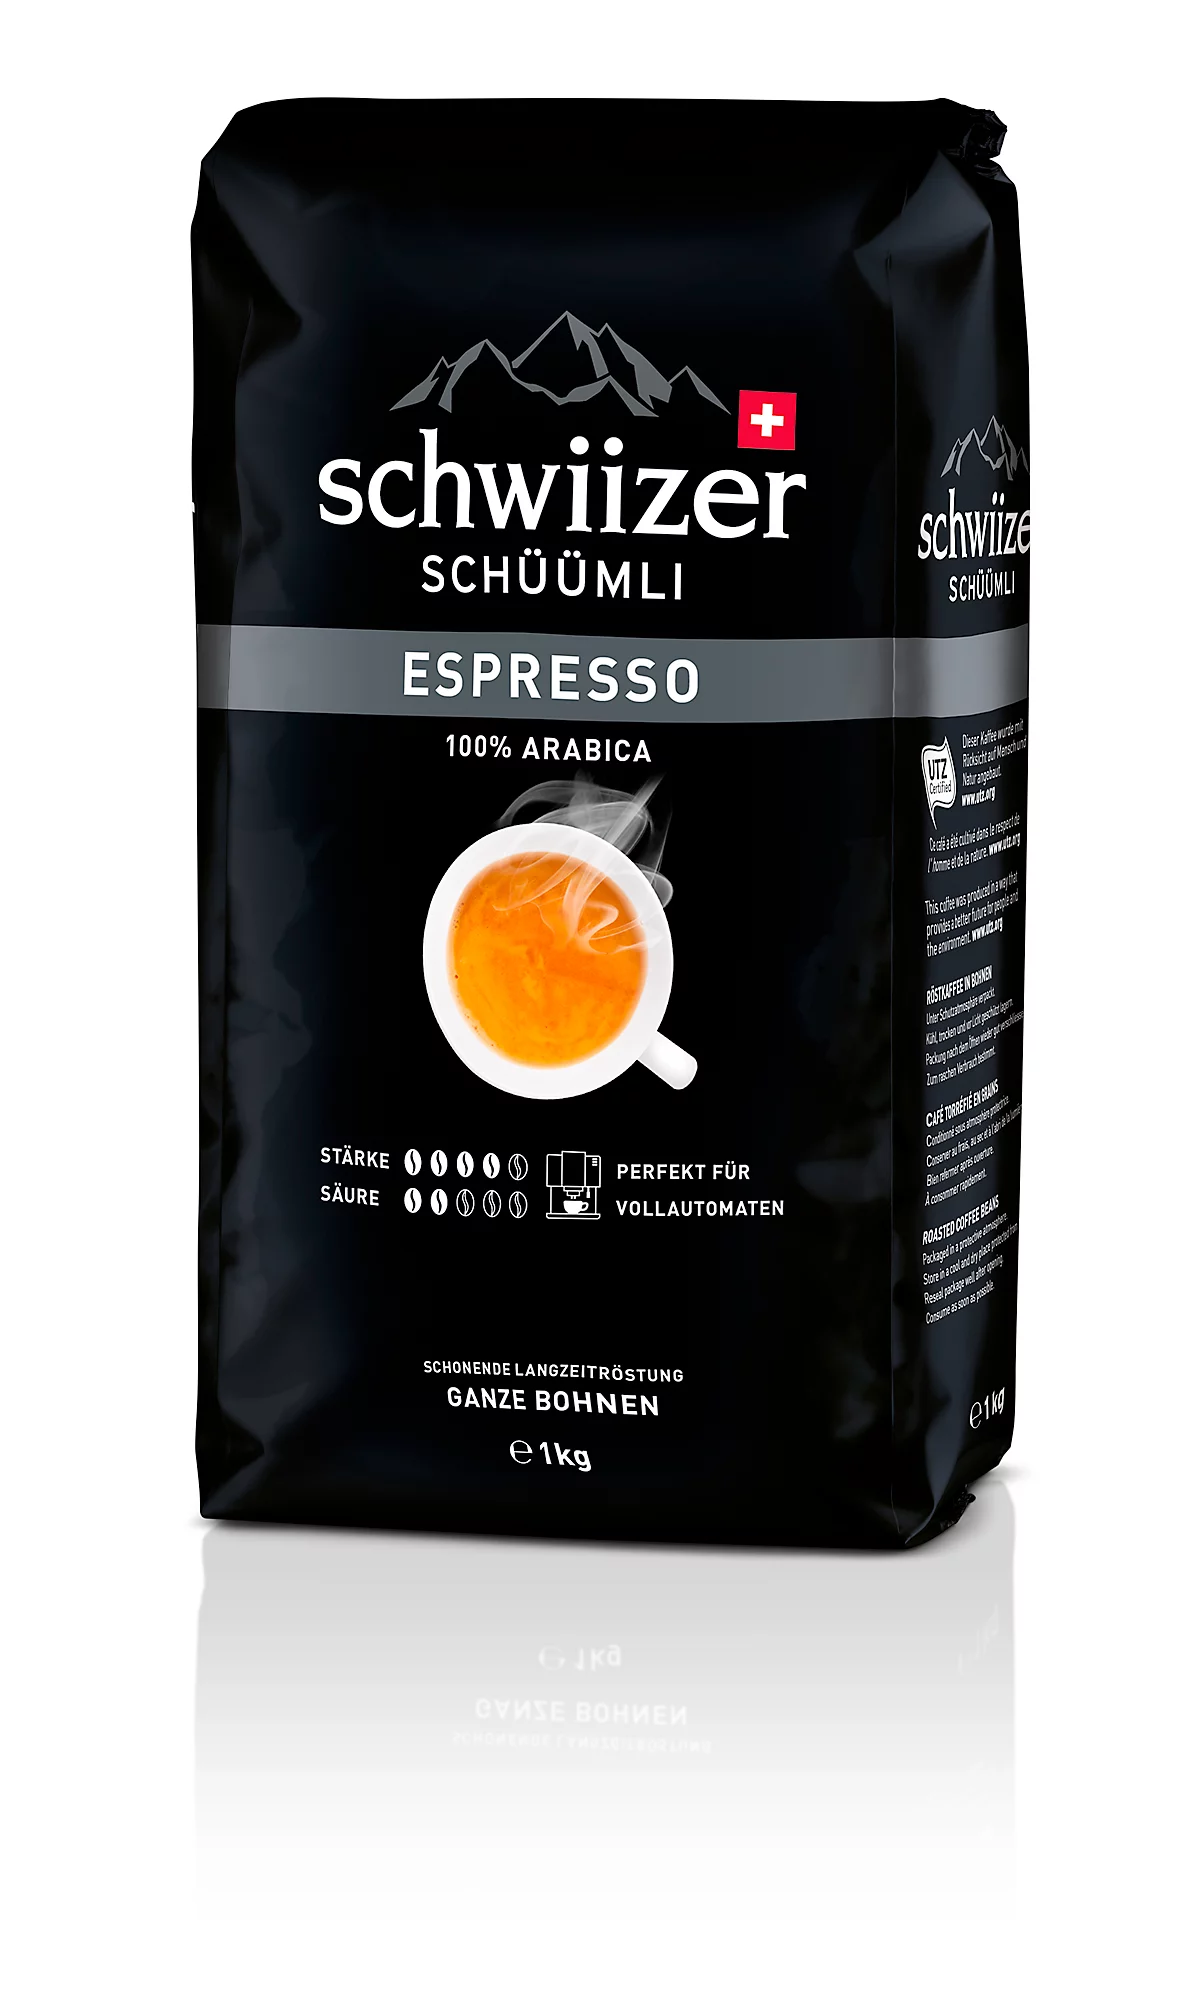 Delica Bohnenkaffee Schwiizer Schüümli Espresso, 100 % Arabica Röstkaffee, Stärkegrad 4/5, UTZ-zertifiziert, 1 kg ganze Bohnen